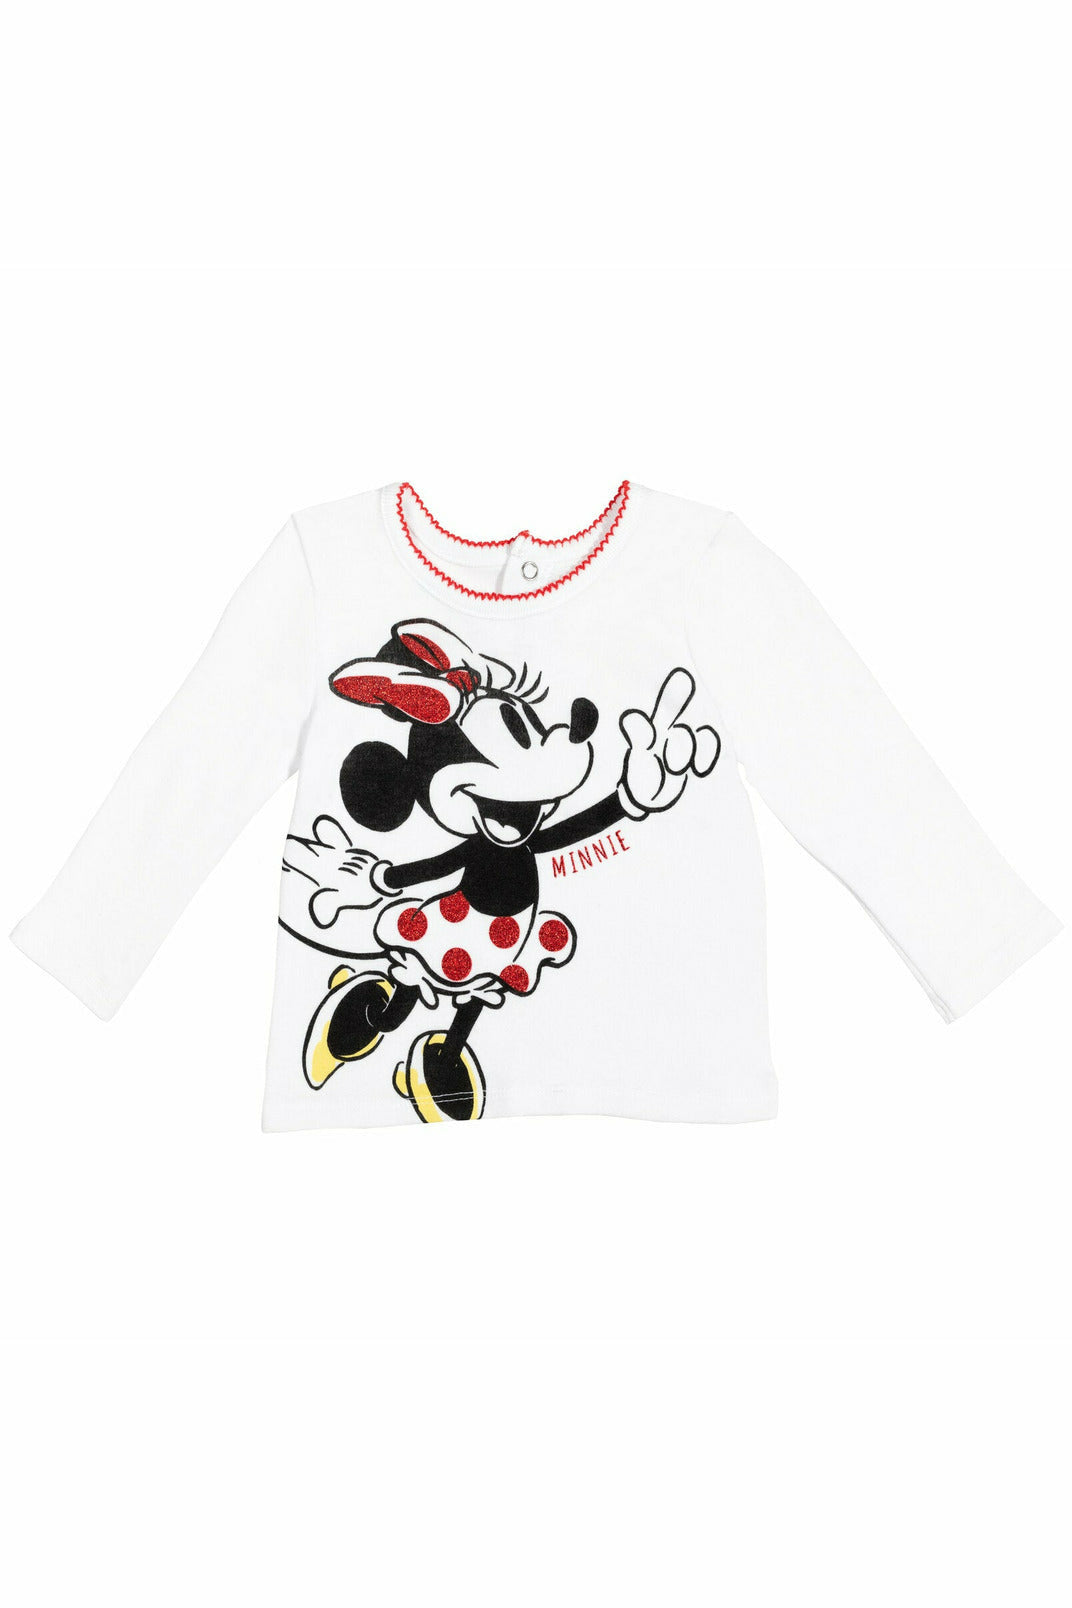 Minnie Mouse 4 Piece Outfit Set: Bodysuit T-Shirt Skirt Legging